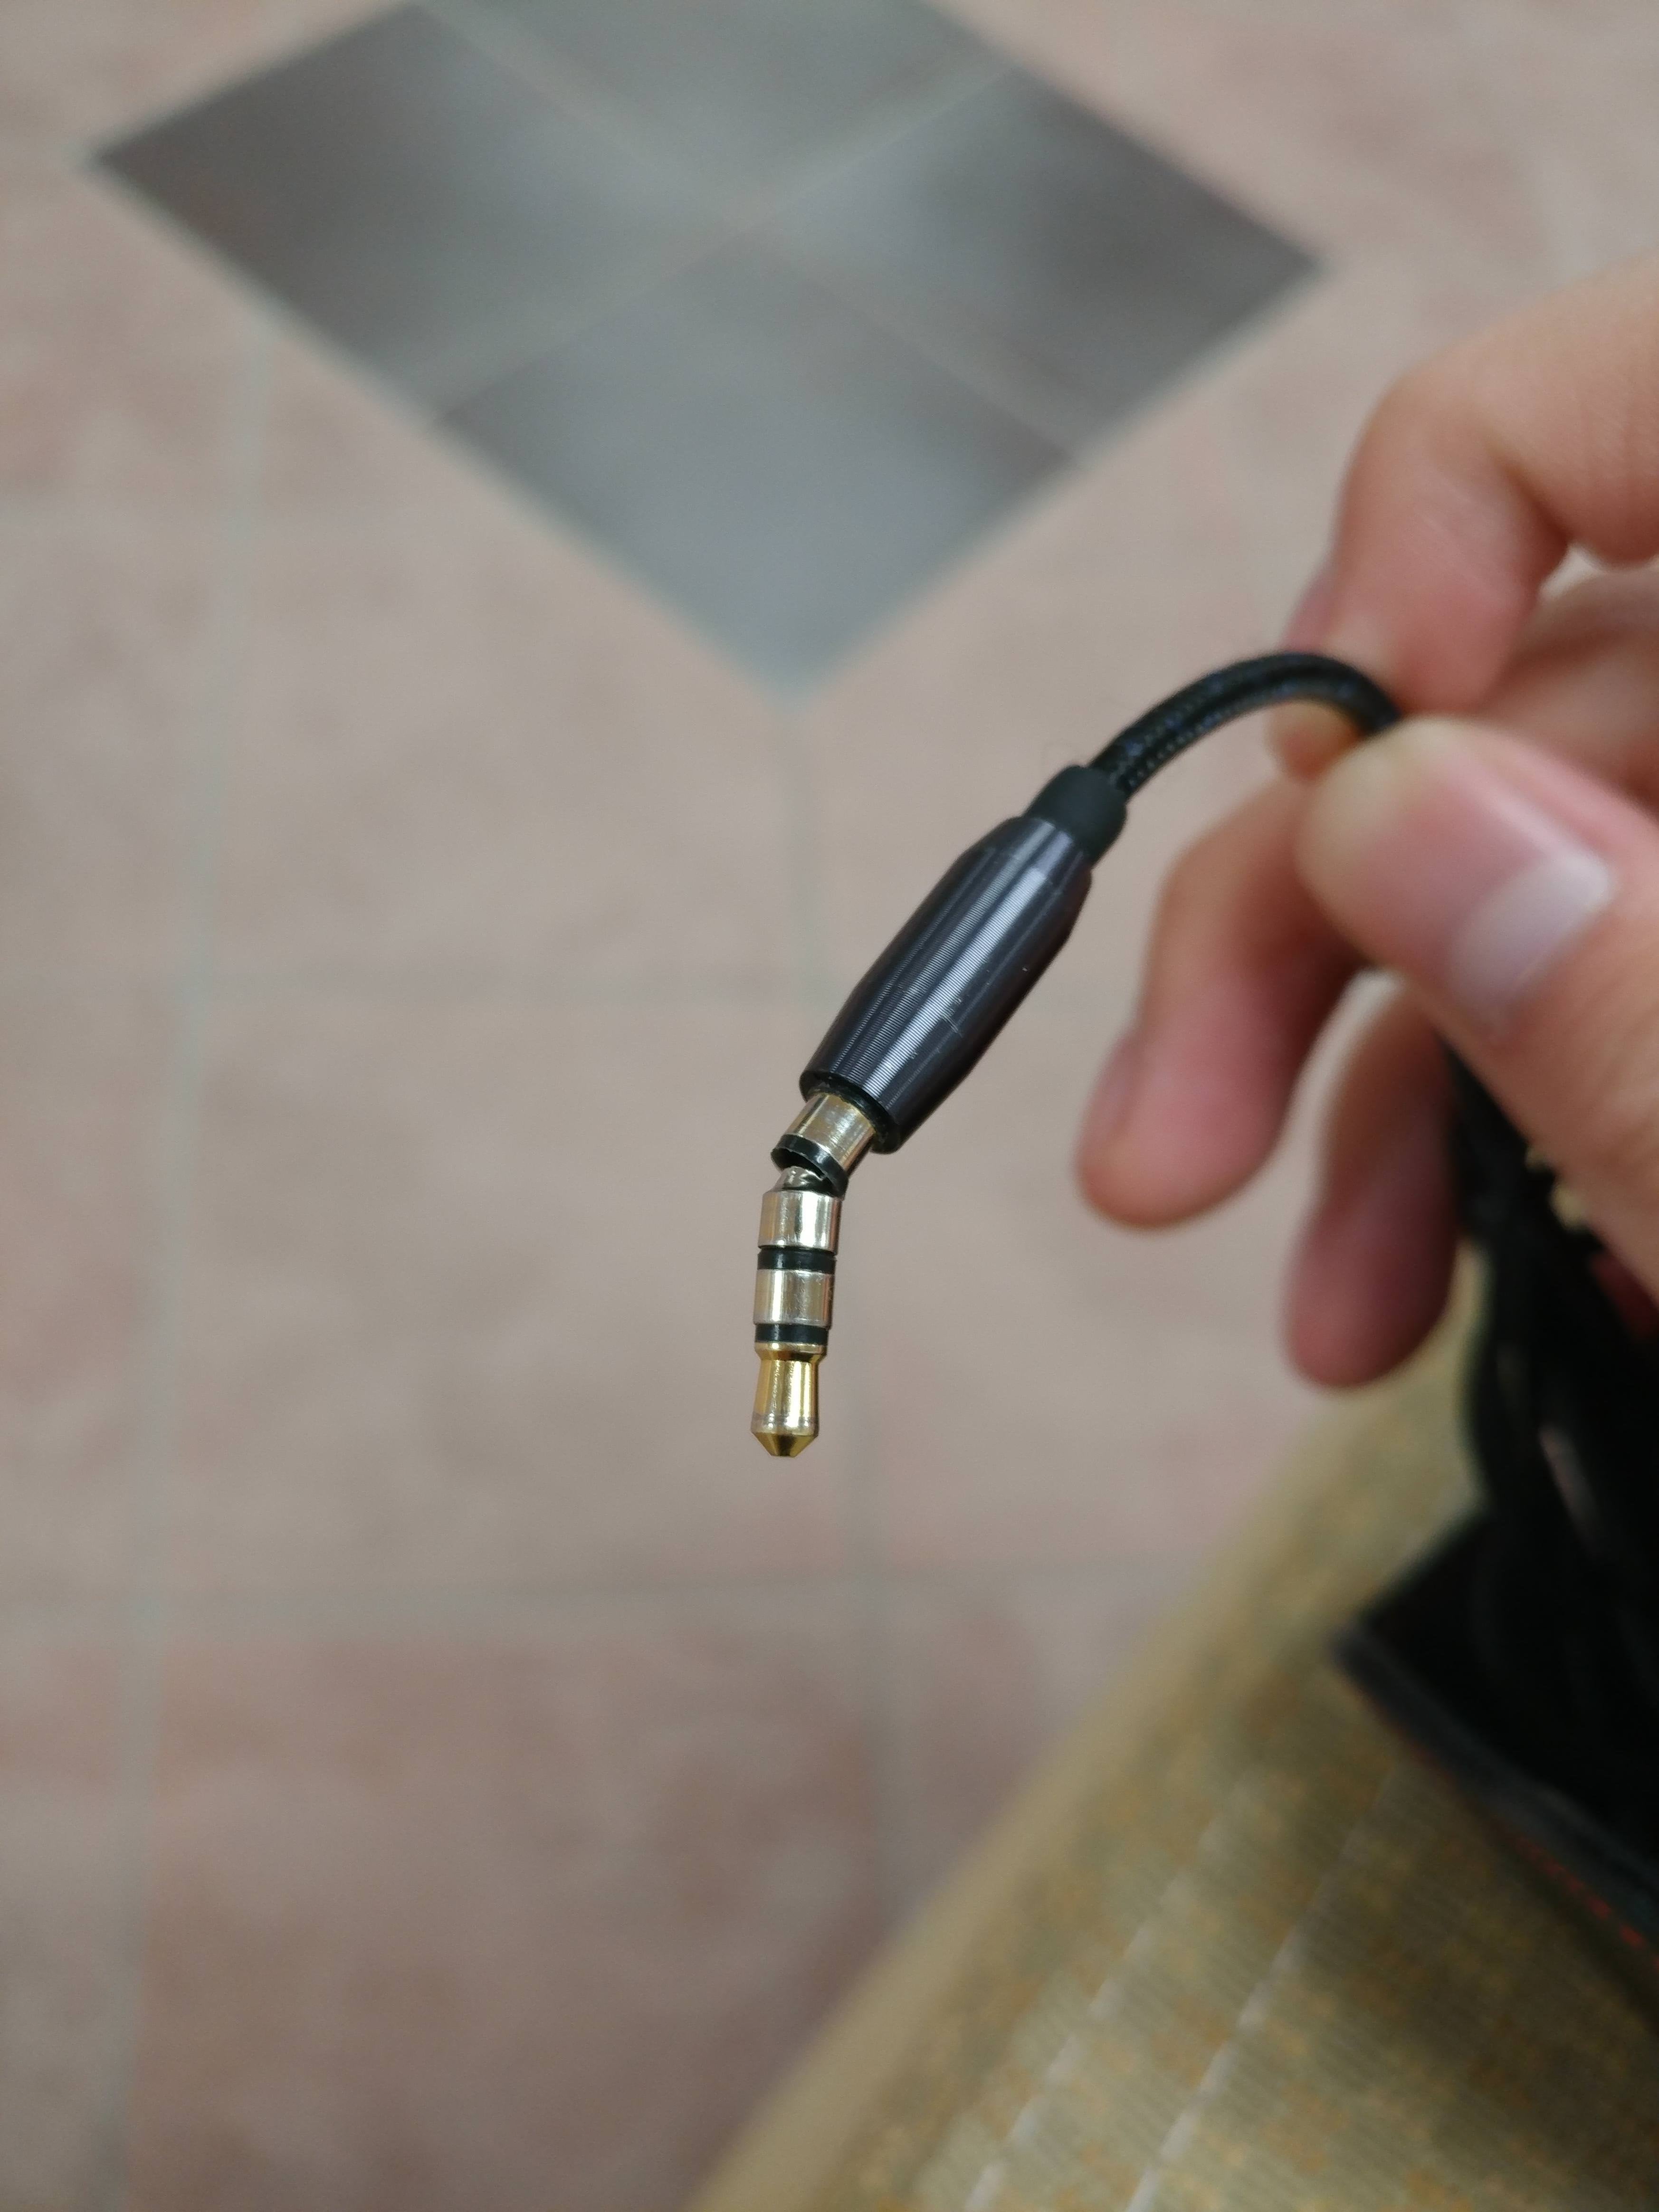 how to fix broken headphone jack